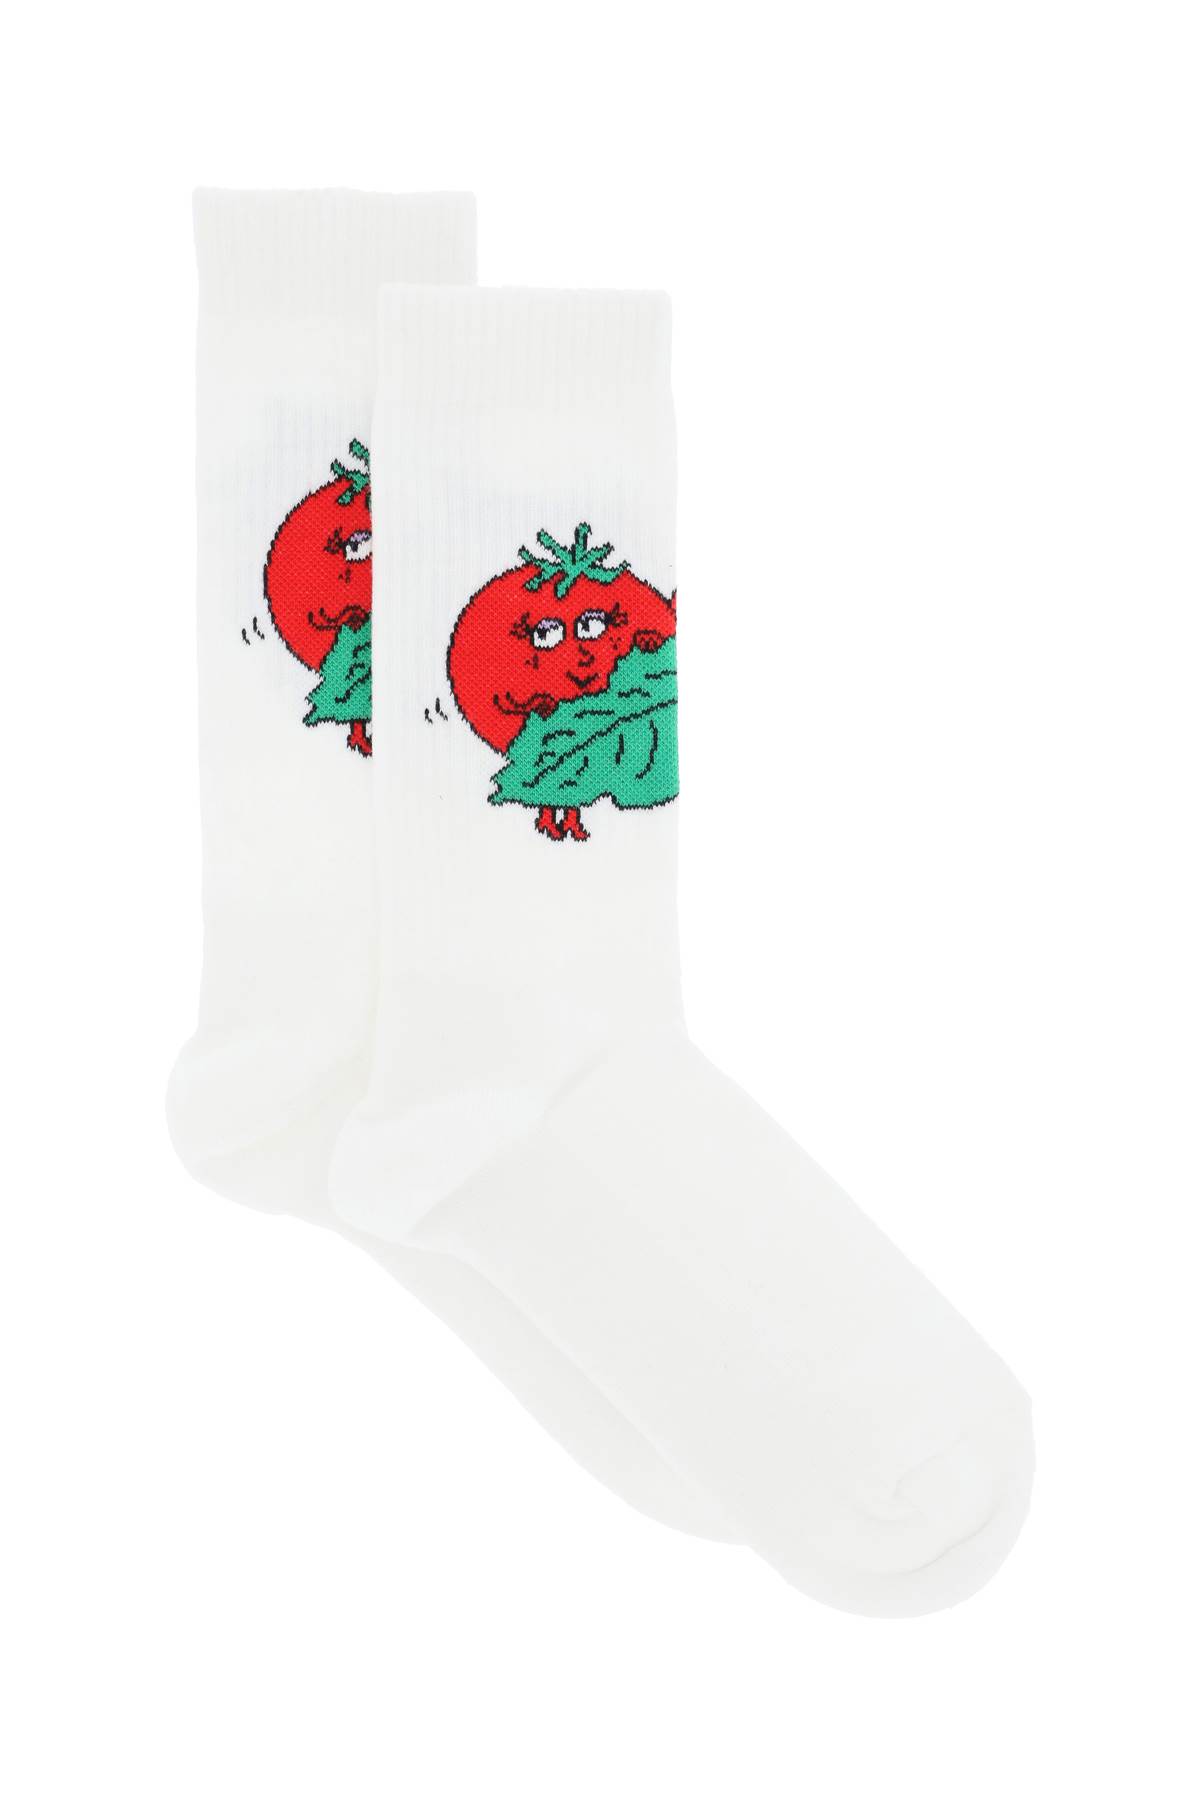 Happy Tomatoes Crew Socks